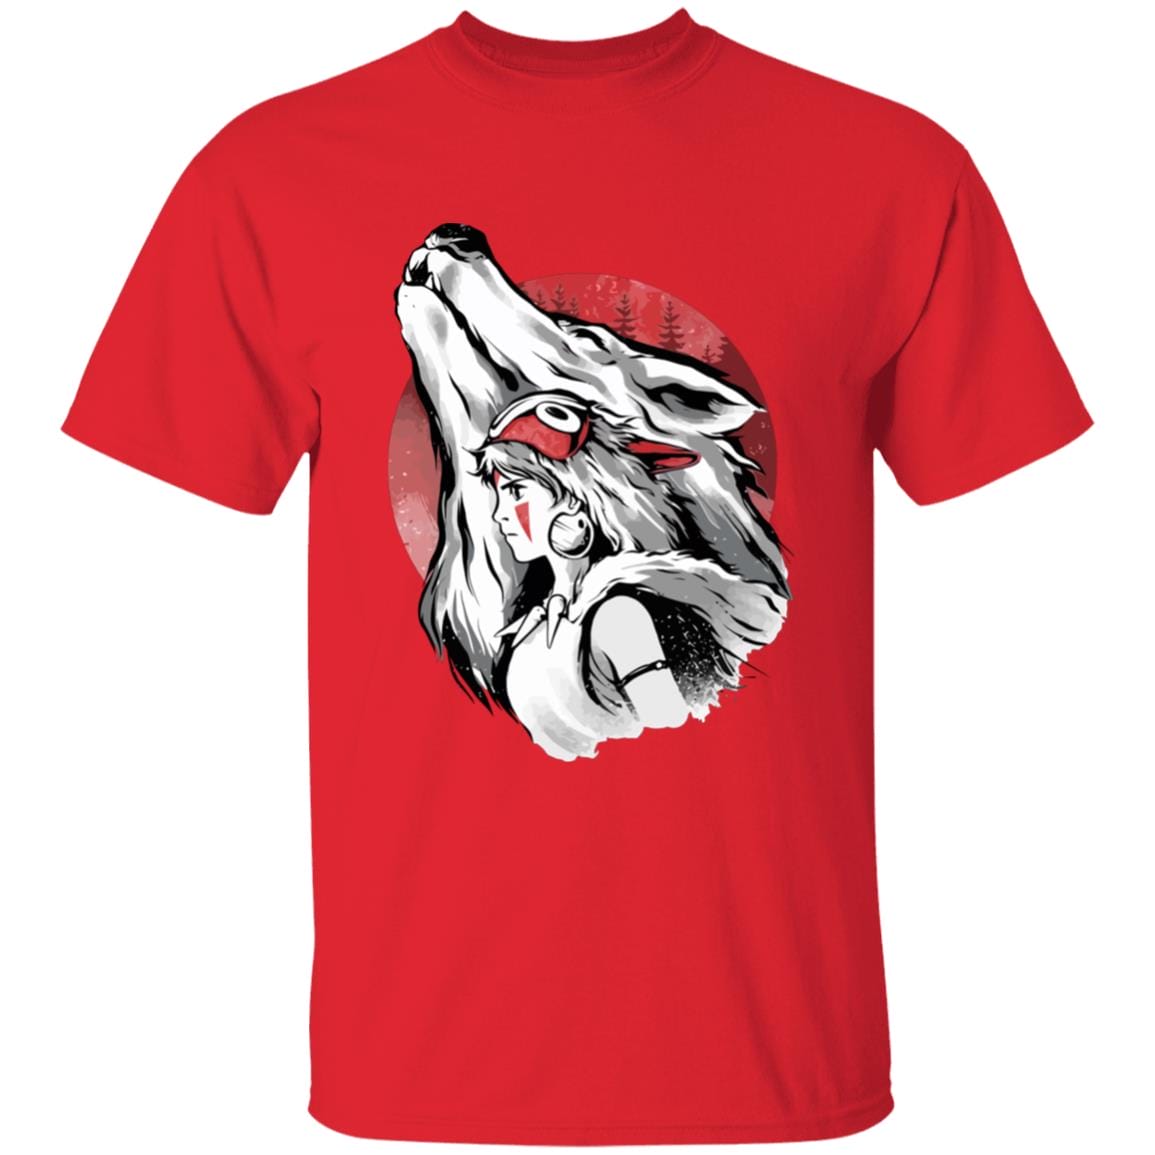 Princess Mononoke – Red Moon T Shirt